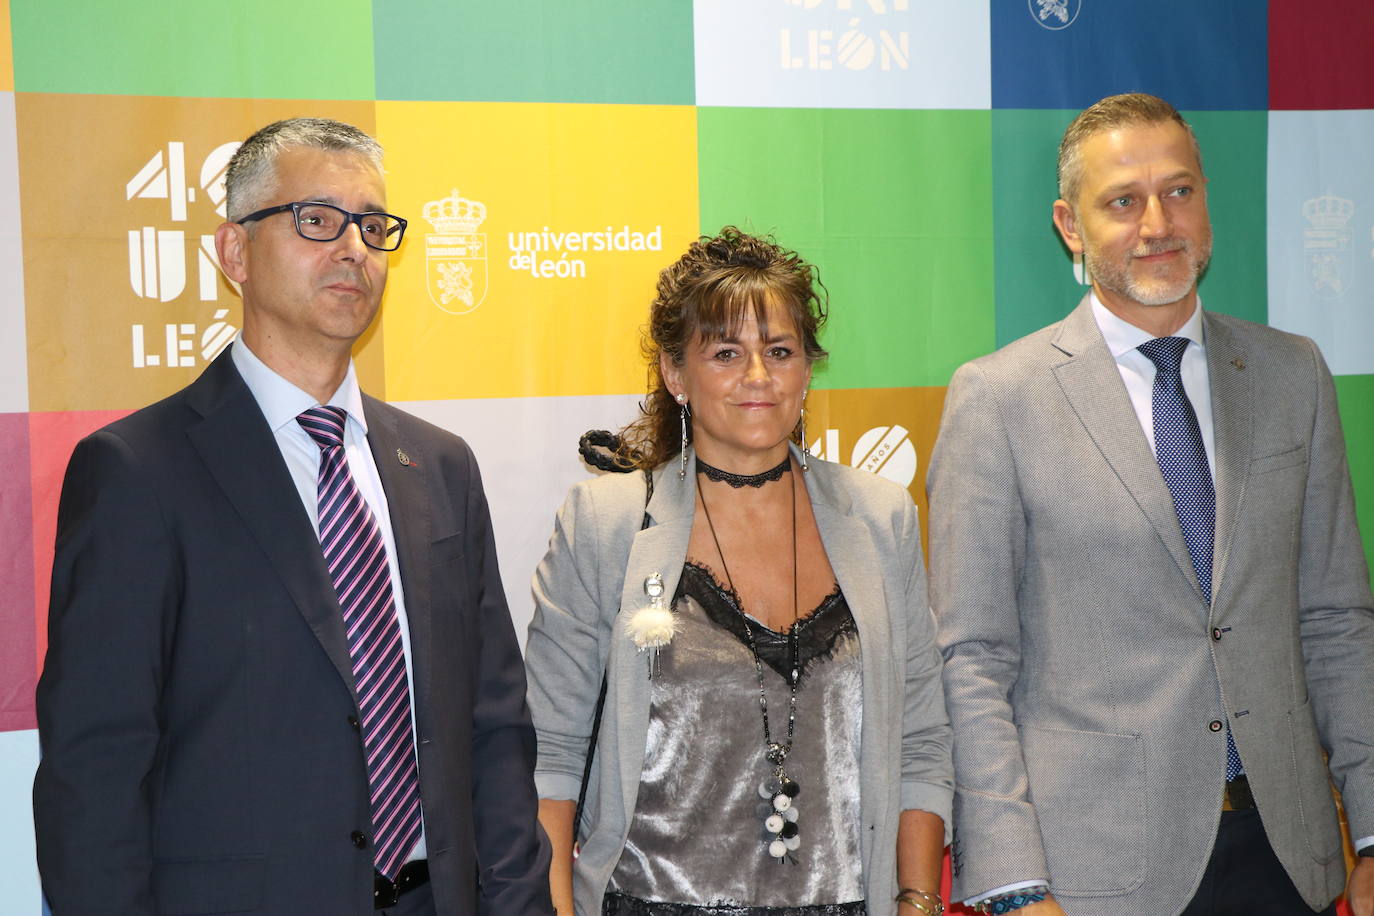 La consejera de Educación, Rocío Lucas, asiste a la gala conmemorativa del 40 aniversario de la Universidad de León. Junto a ella, el presidente del Consejo Social, Javier Cepedano